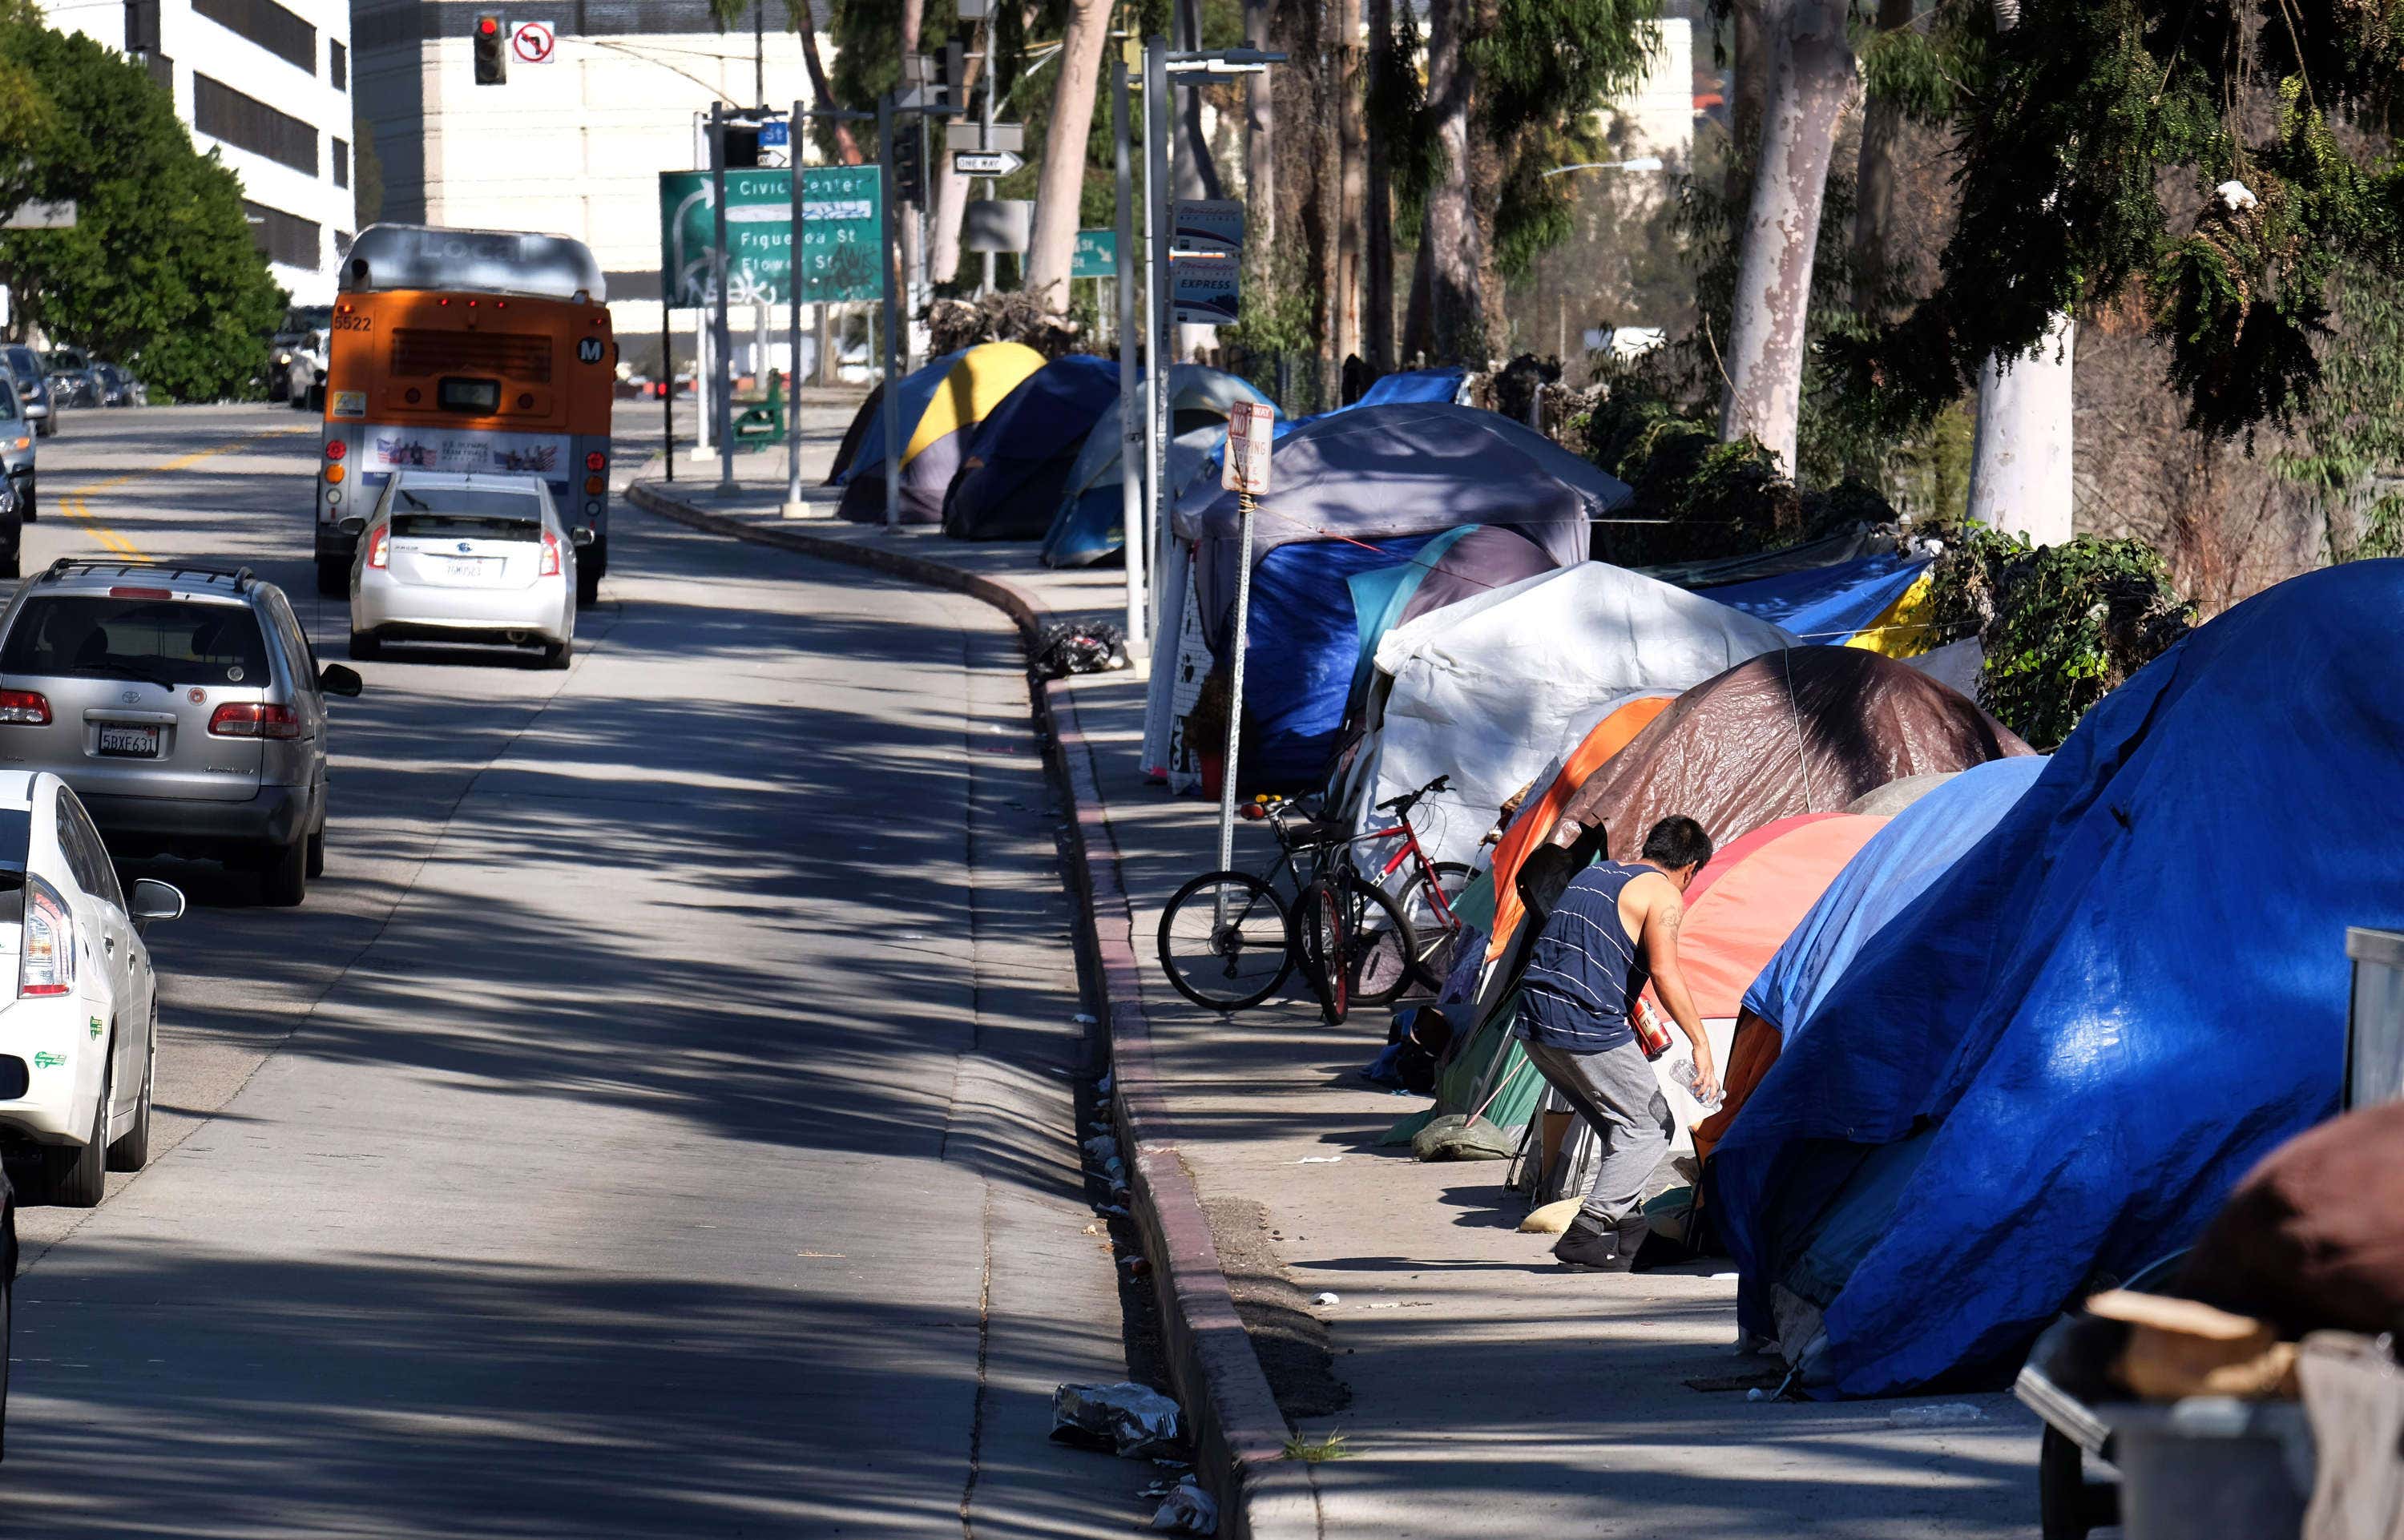 Street sleeping. Лос Анджелес бомжи палатки. ЛОСАНДЖЕЛЕС ьомжи палатки. Бомжи в палатках в США Лос Анджелес.